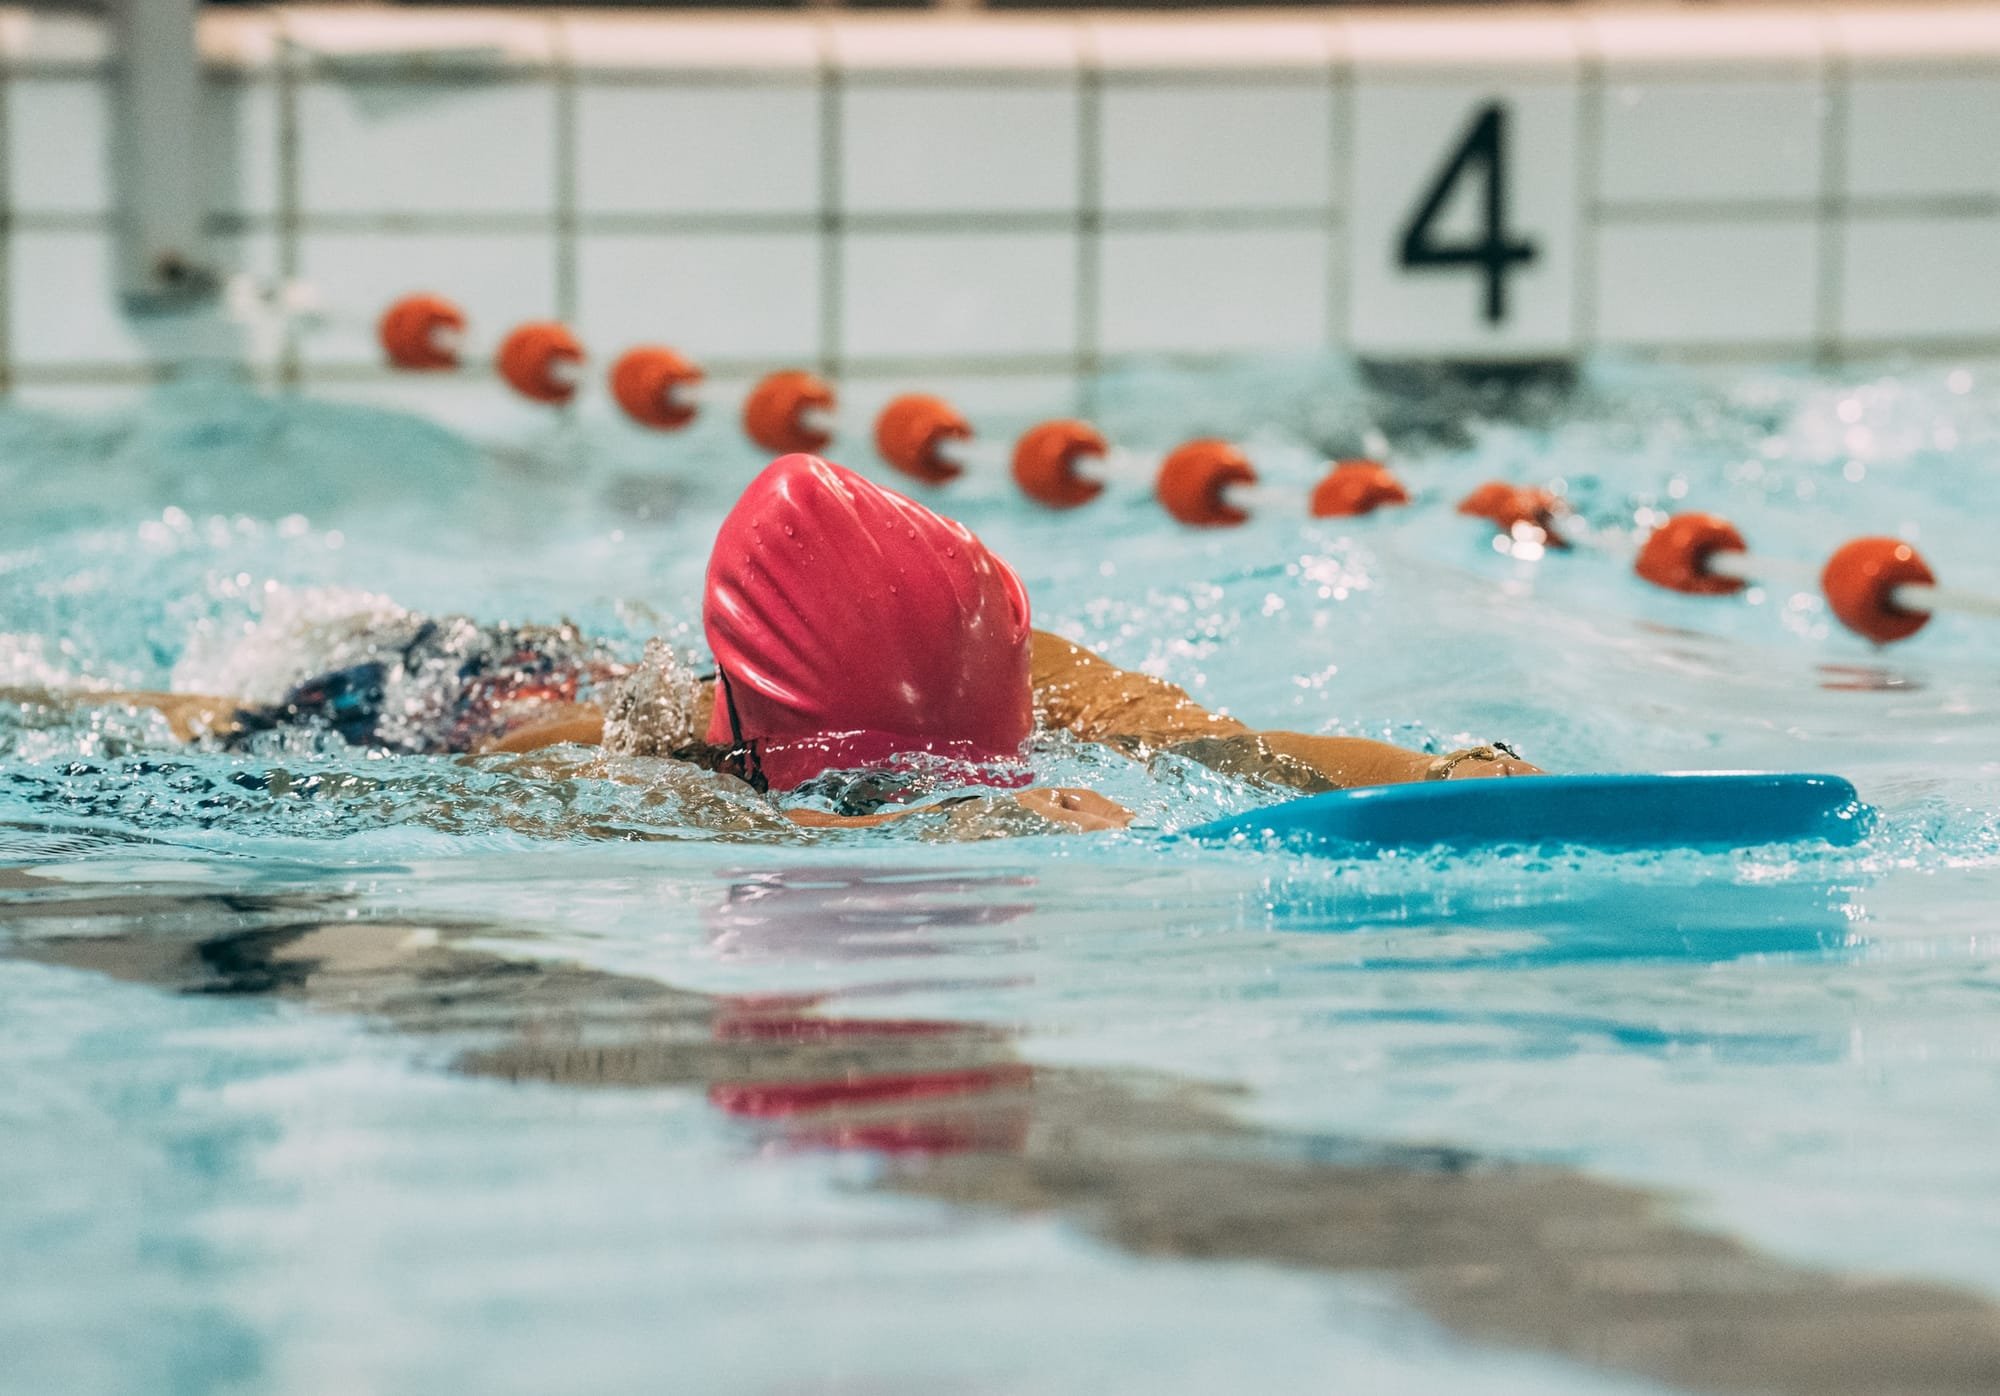 Korzyści płynące z uprawiania sportu jakim jest pływanie